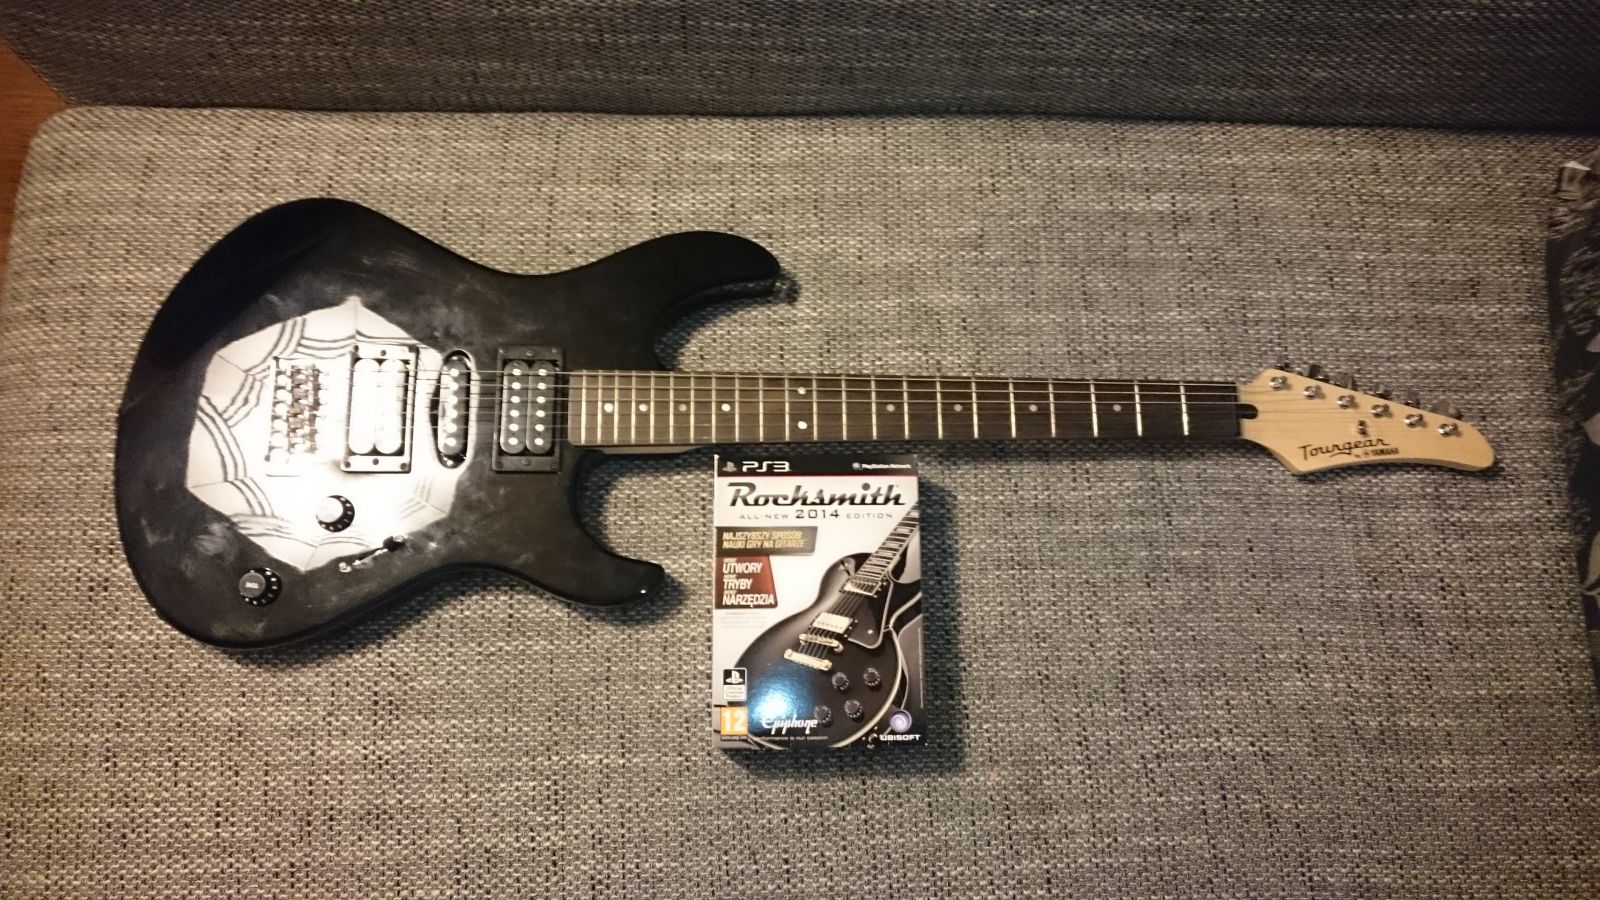 Rocksmith + Yamaha gitara